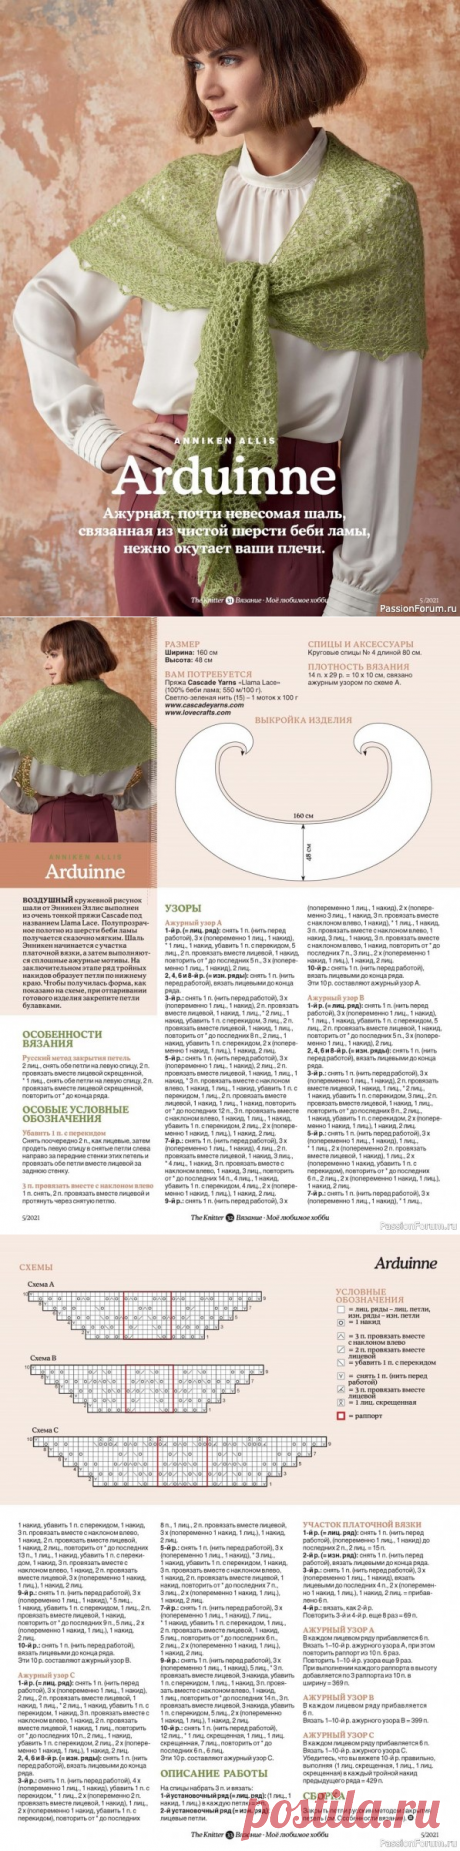 Вязание. Журнал "Мое любимое хобби" №5/2021 | Вязание для женщин спицами. Схемы вязания спицами